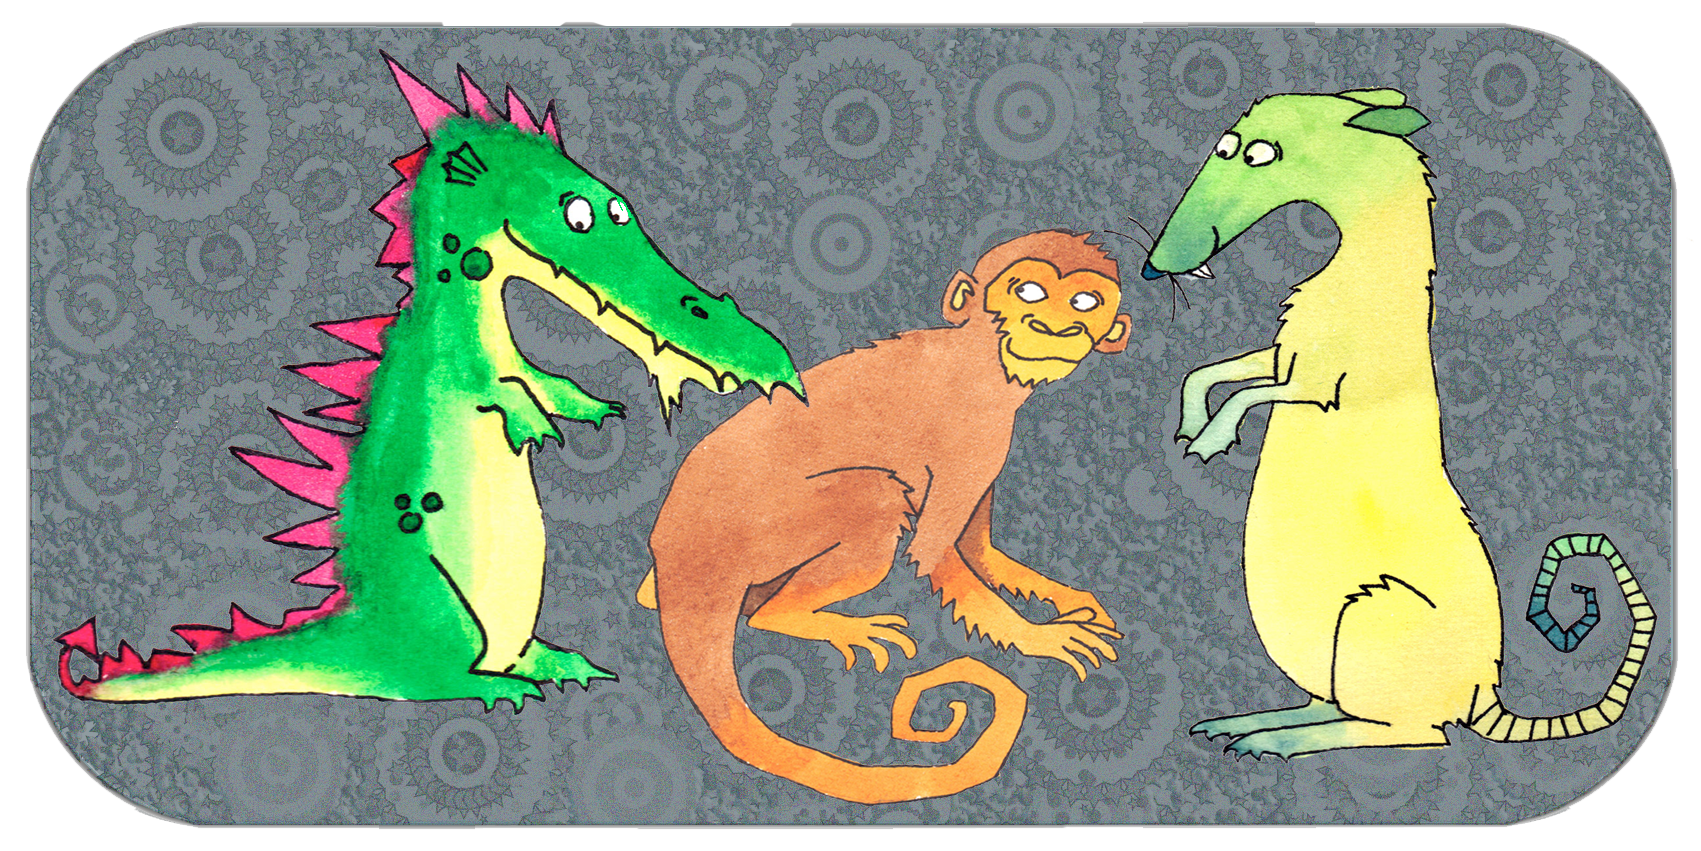 De fyra kompatibla grupperna | San He, tre harmonier | Grupp drake, apa, råtta